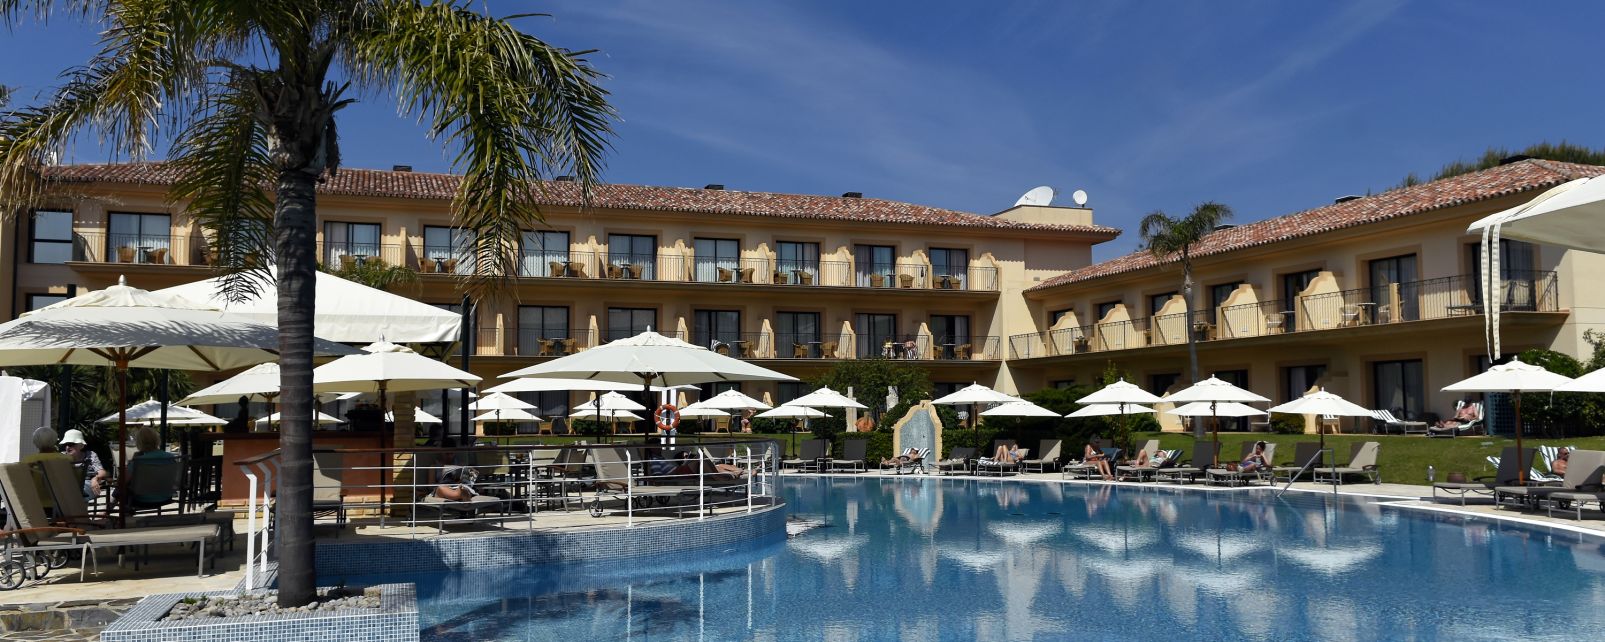 Hotel La Quinta Resort Spa